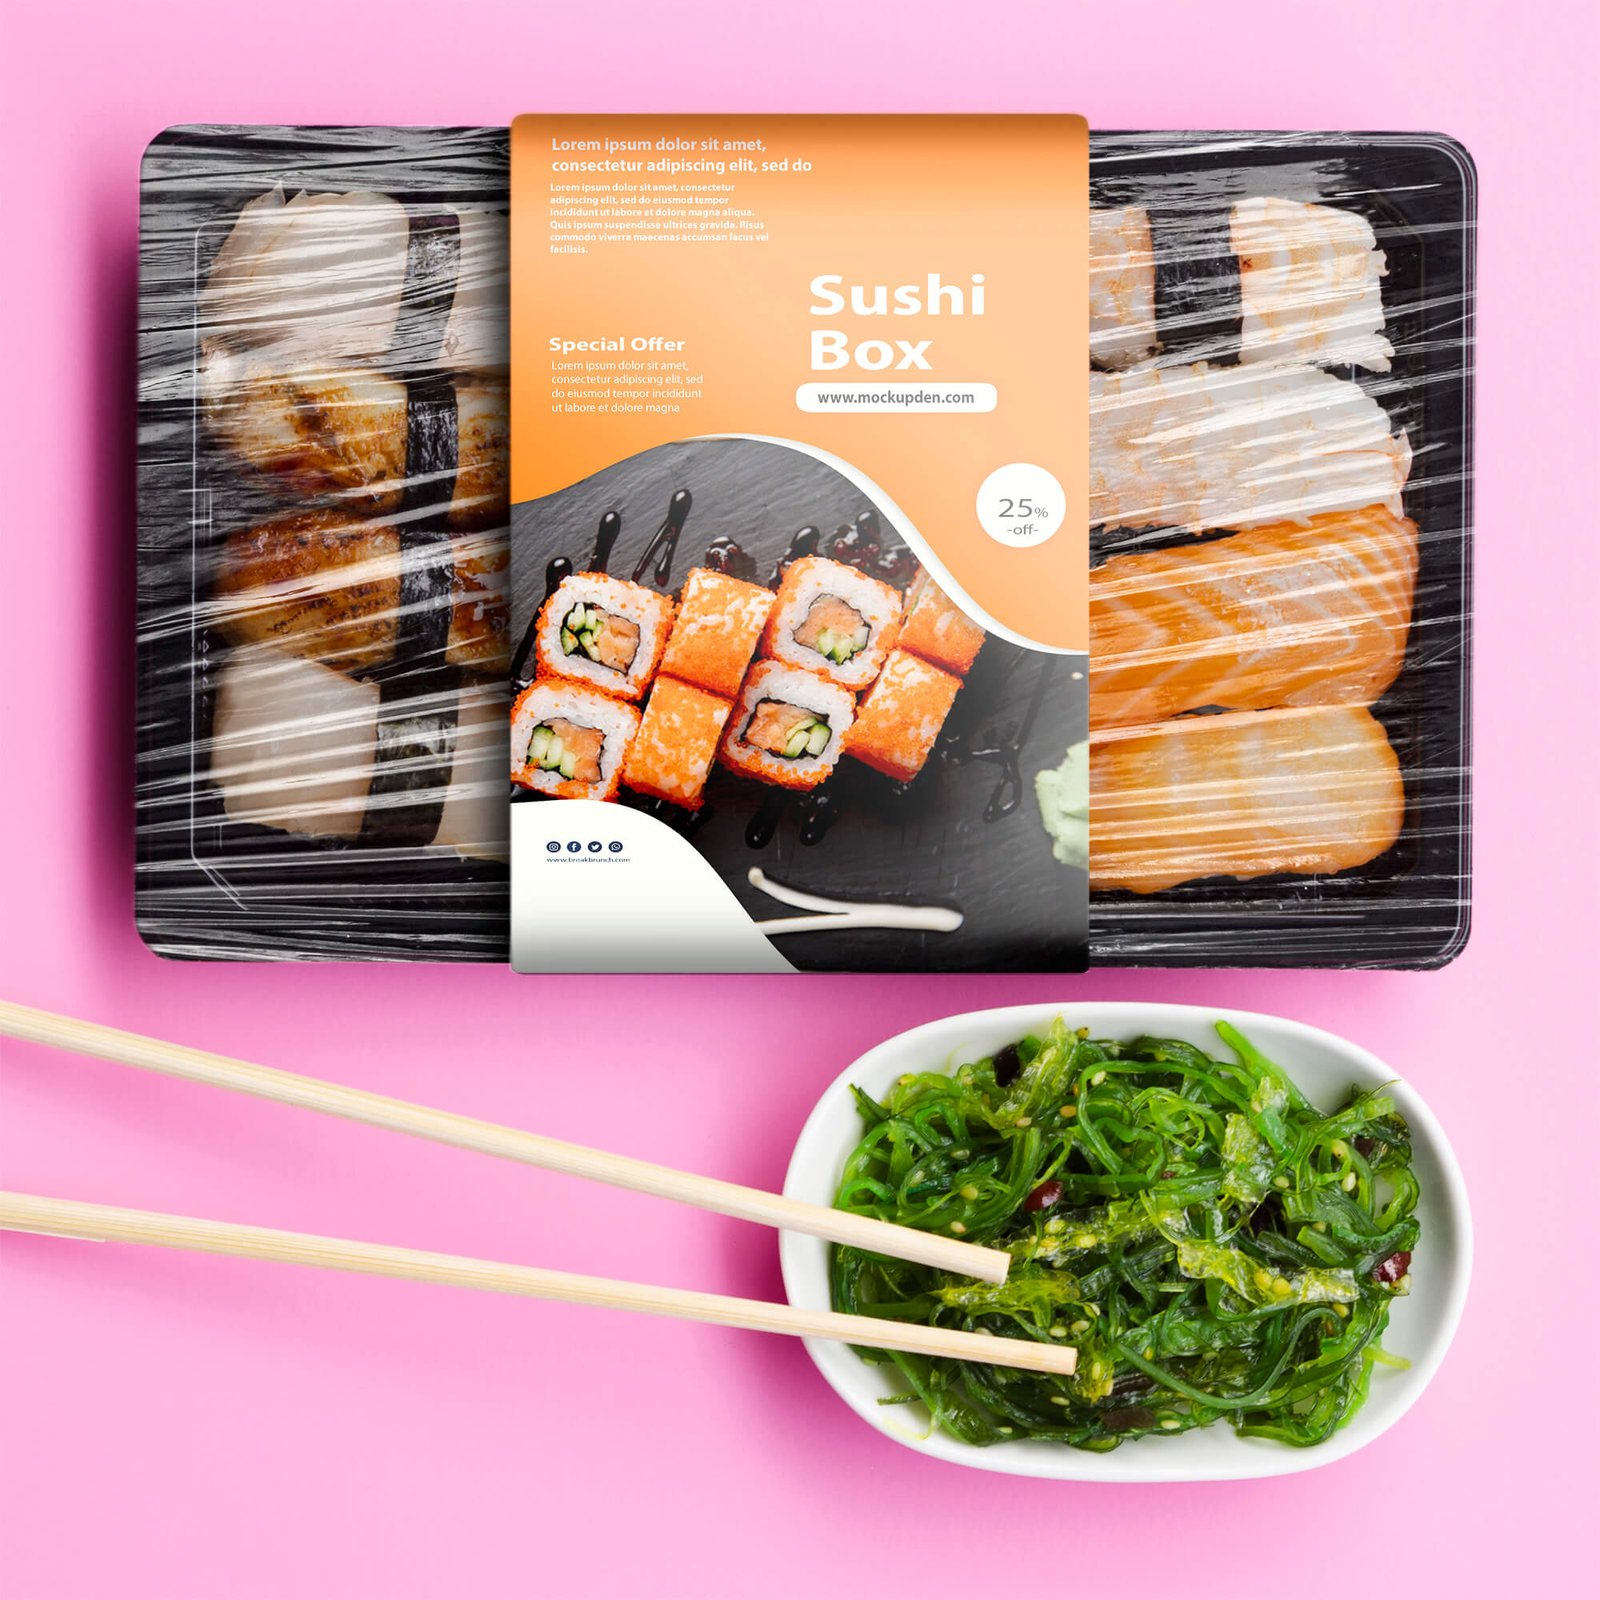 Free Sushi Box Packaging Mockup PSD Template - Mockup Den